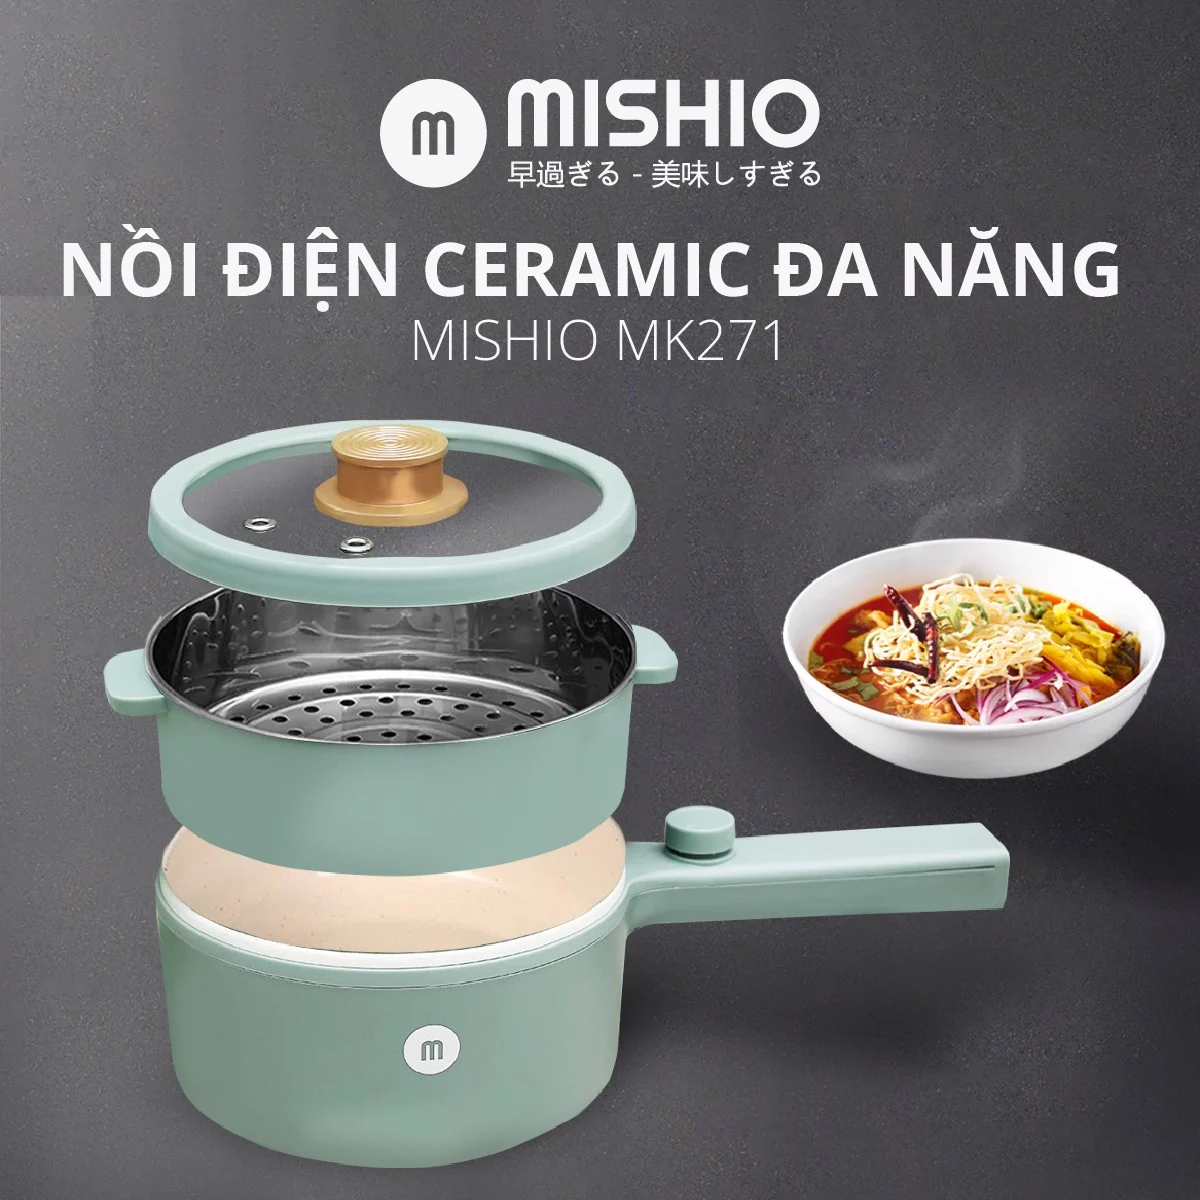 Nồi điện ceramic Mishio nấu lẩu, mỳ, canh, súp dễ dàng - Hàng chính hãng